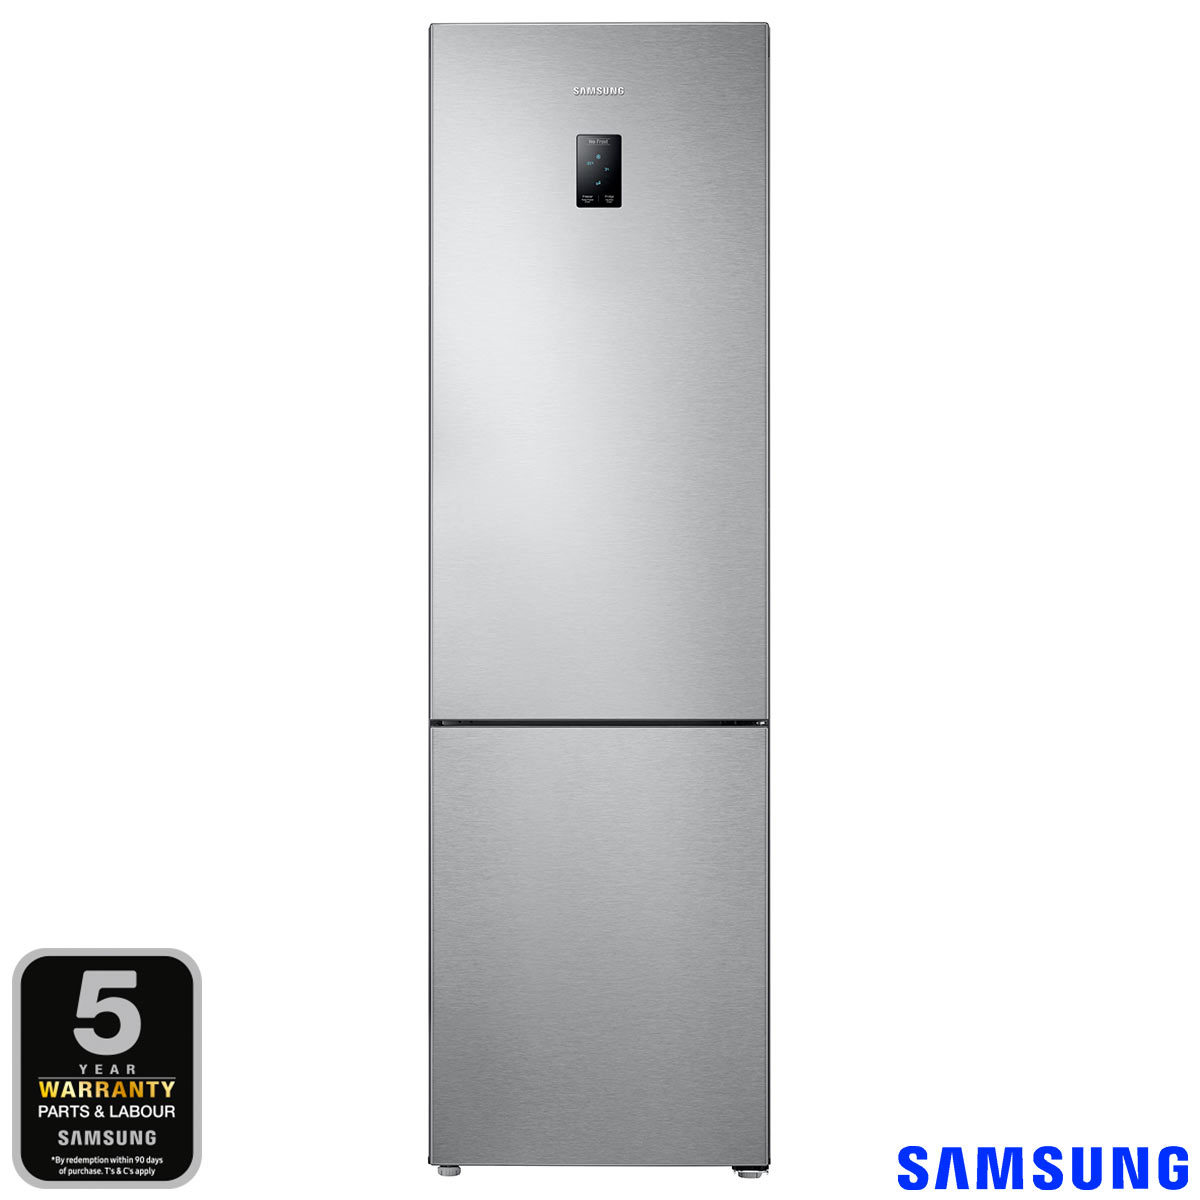 Samsung RB37J5230SA/EU, Fridge Freezer A+ Rating in Graphite